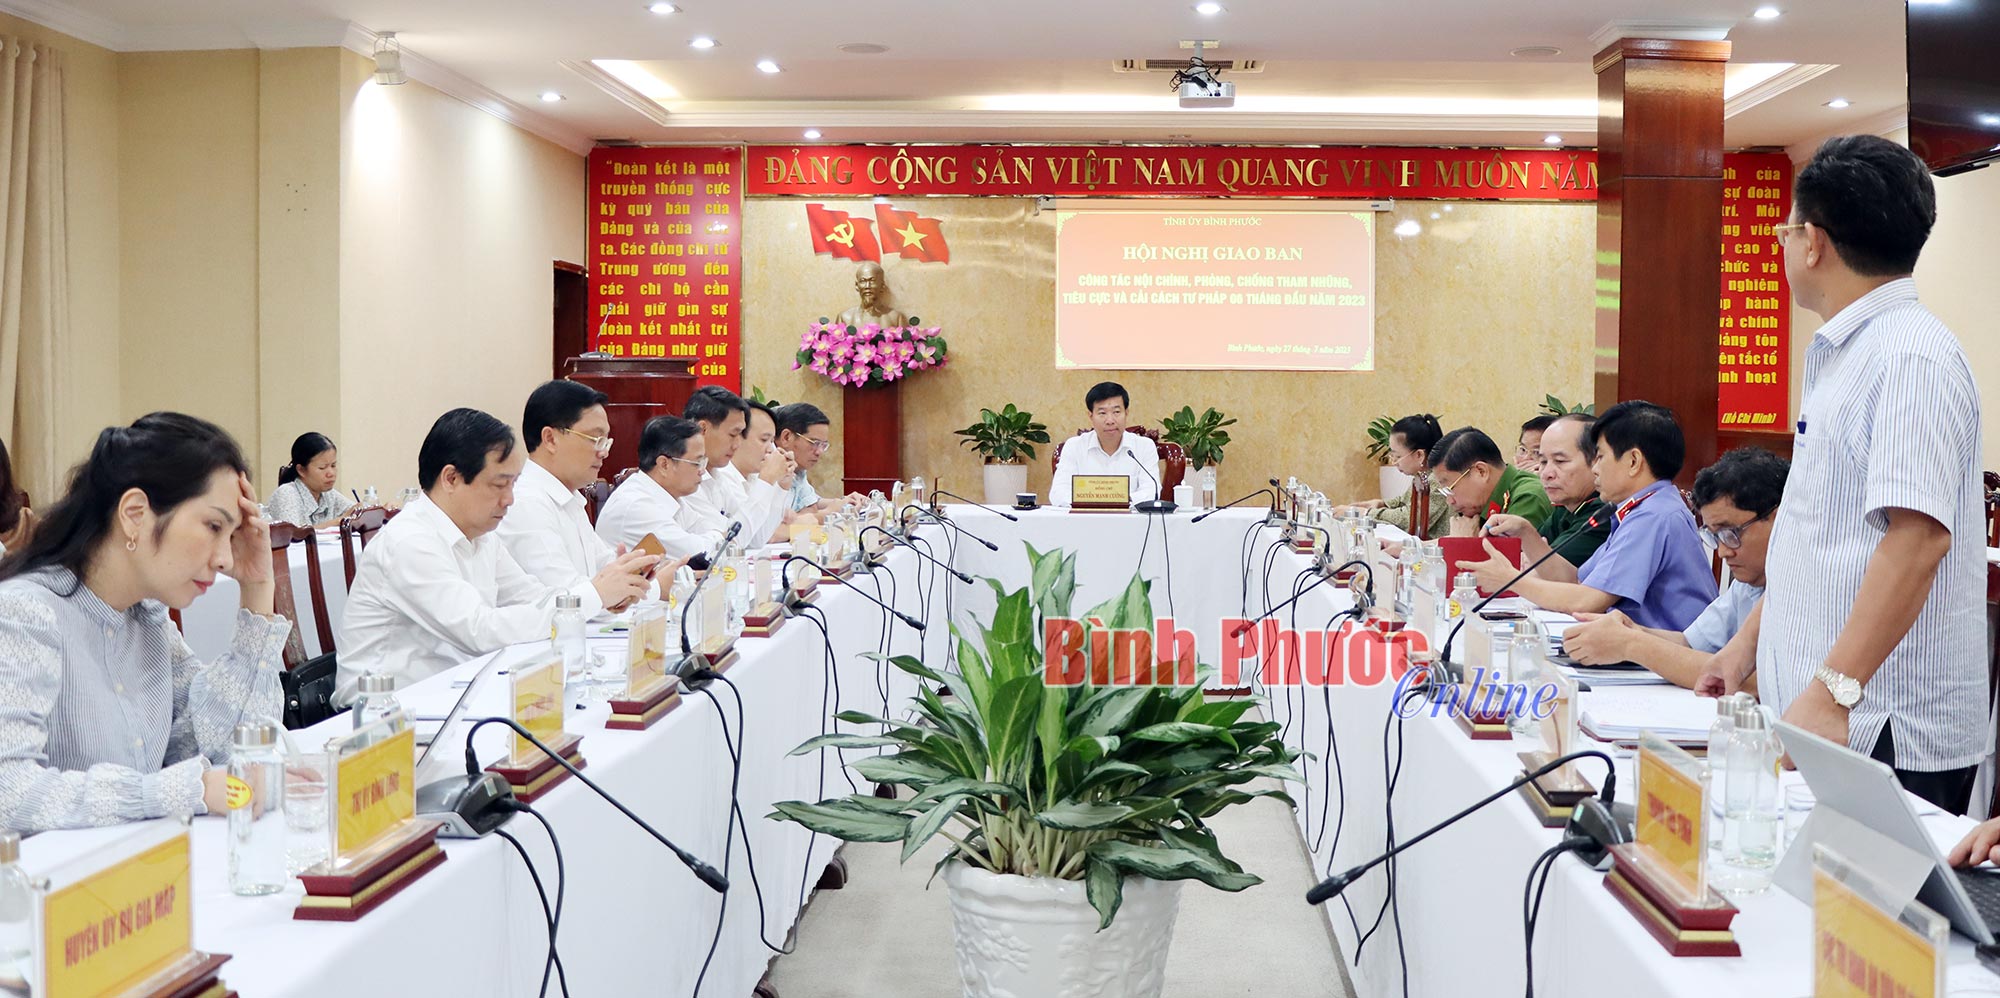 Hội nghị giao ban công tác nội chính, PCTNTC và cải cách tư pháp của tỉnh Bình Phước